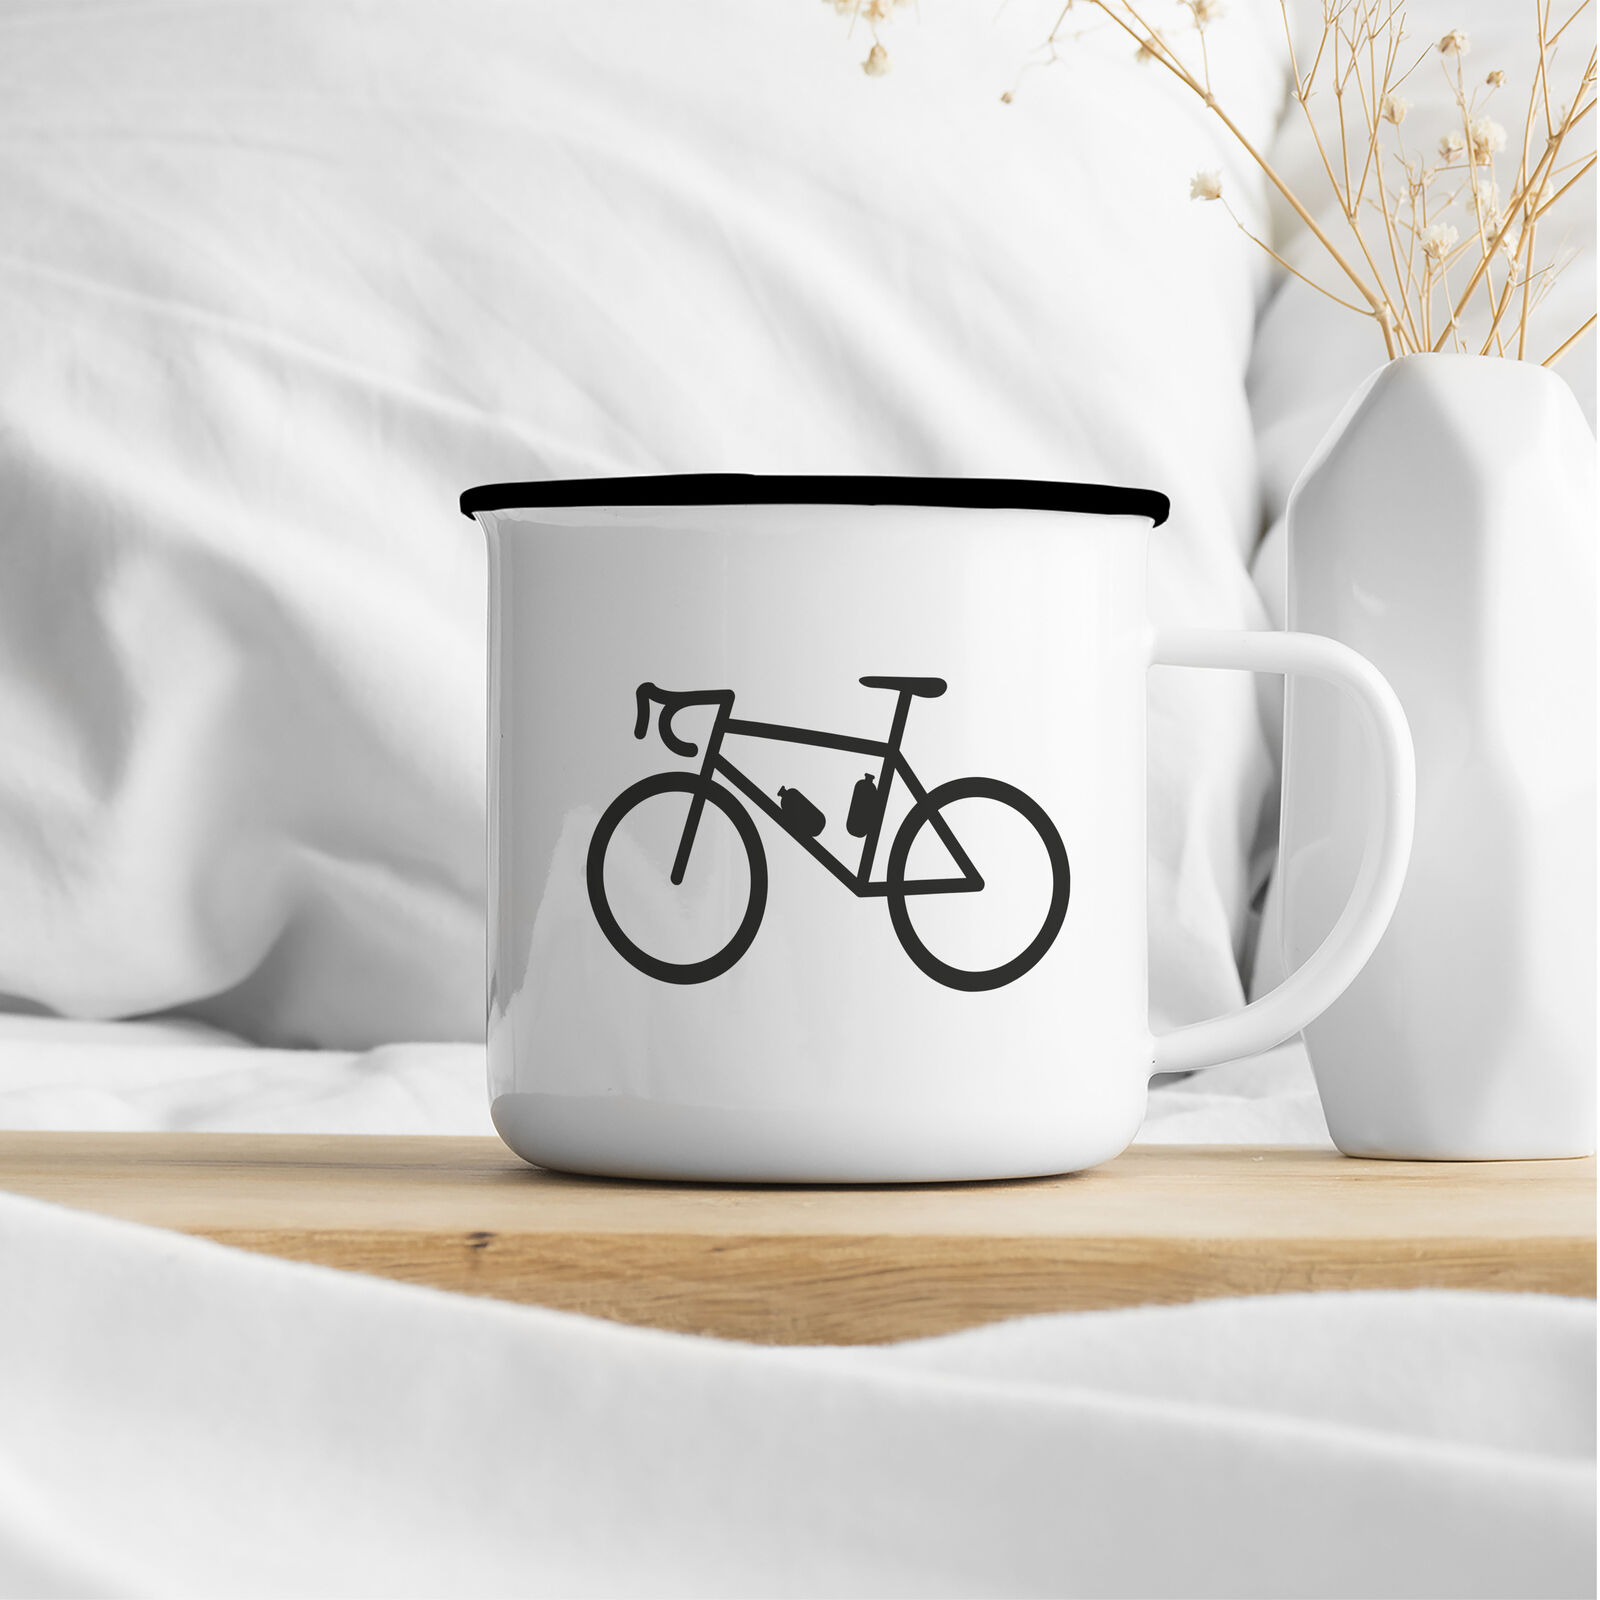 Bike Fahrrad Geschenk Idee Emaille Tasse Fahrrad Kaffeetasse Souvenir Weihnachts